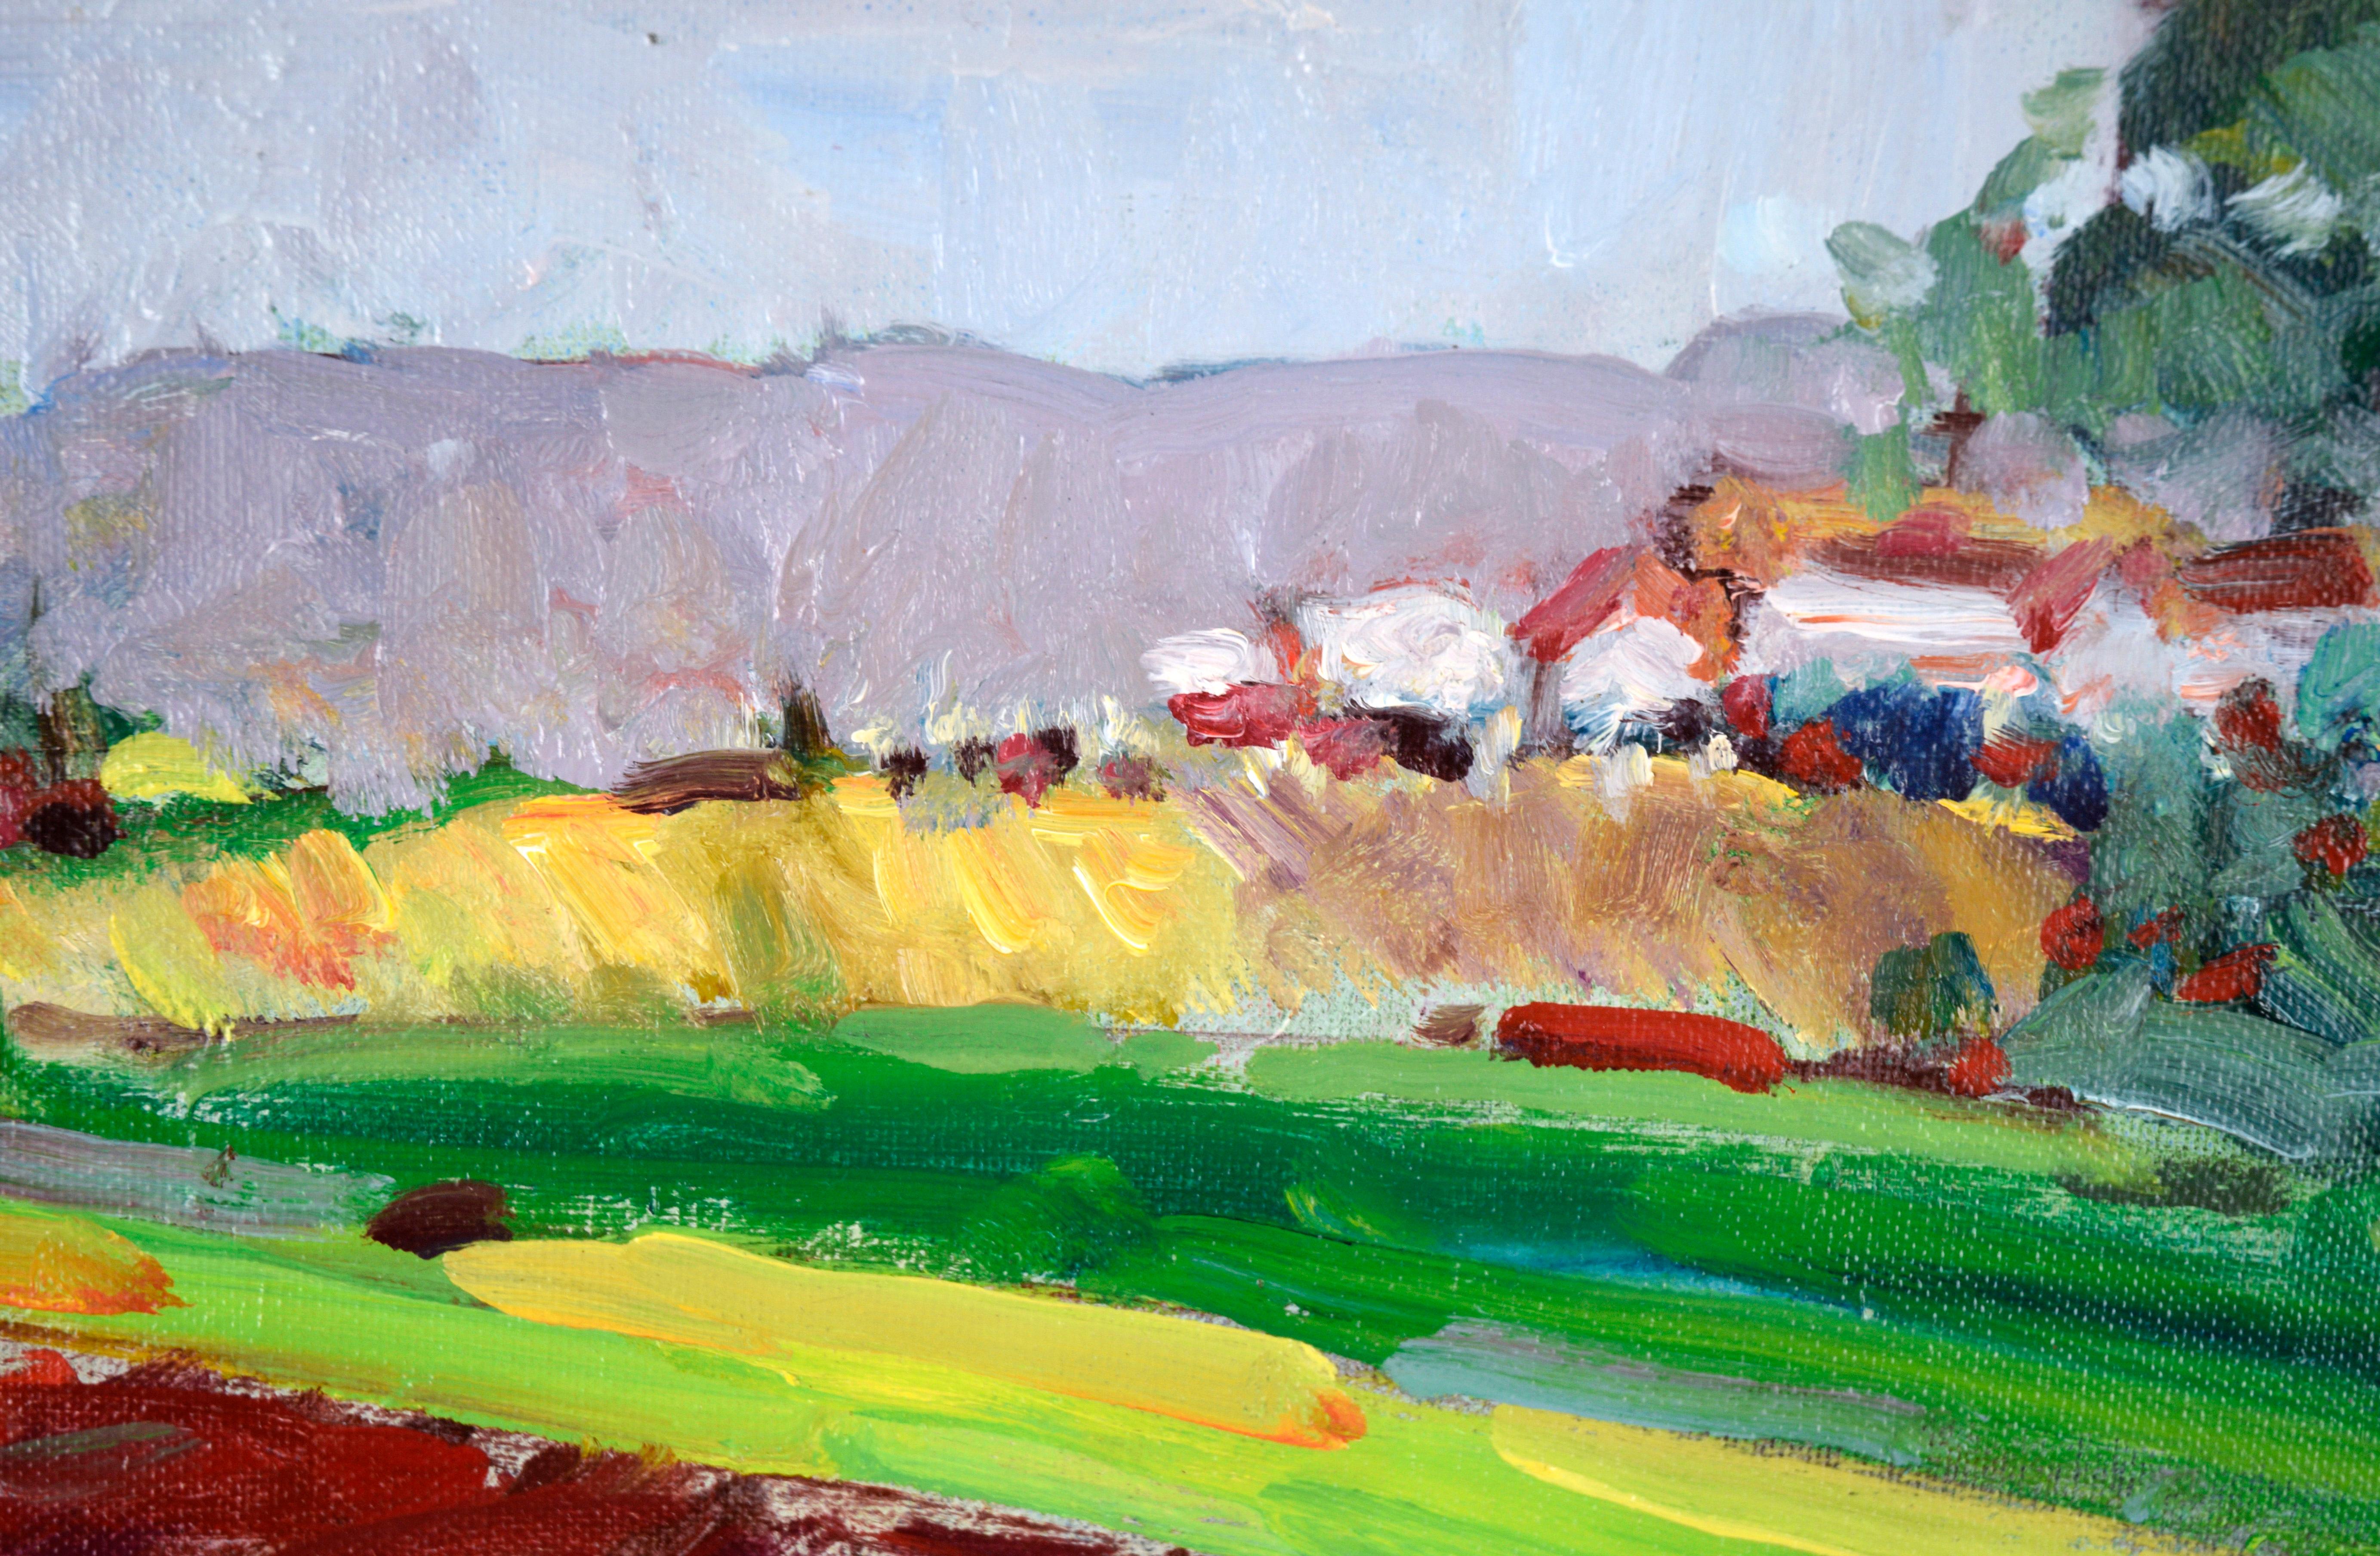 « Salinas Valley Farm » - Paysage fauviste à l'huile sur panneau d'artiste

Paysage lumineux et saturé de Will H. Light (américain, 1926-2004). Le spectateur se trouve au bord d'une ferme et regarde les rangées de champs rouges, jaunes et verts. Au